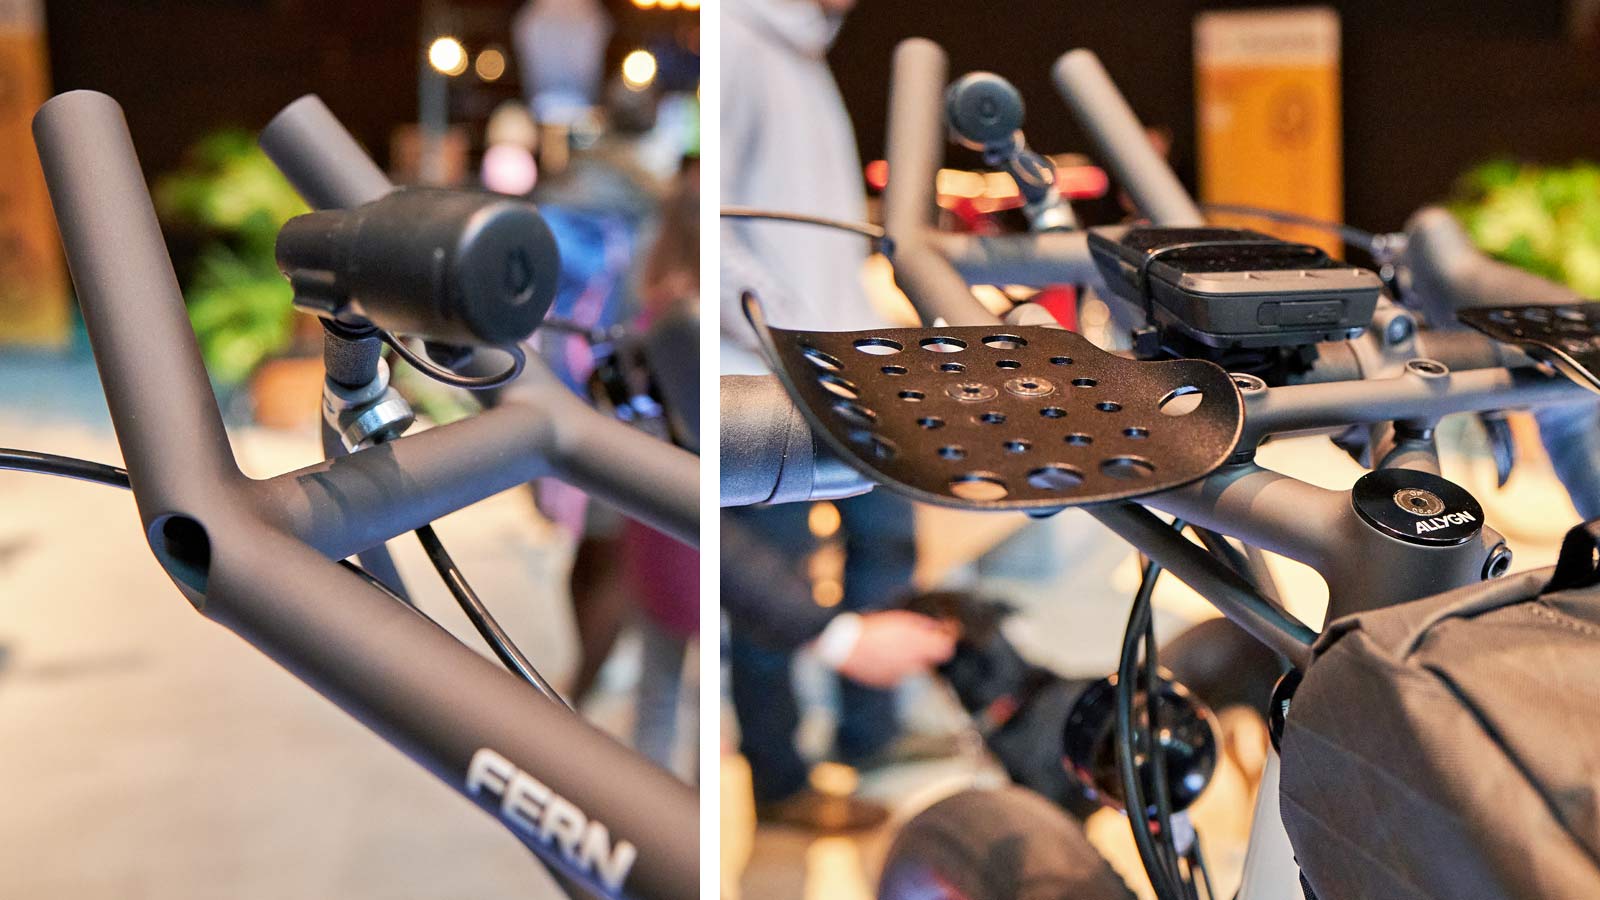 Fern-steel gravel adventure bike, Kolektif Berlin, custom steel ultra cycling randonneur bike, photo@hagbardcel